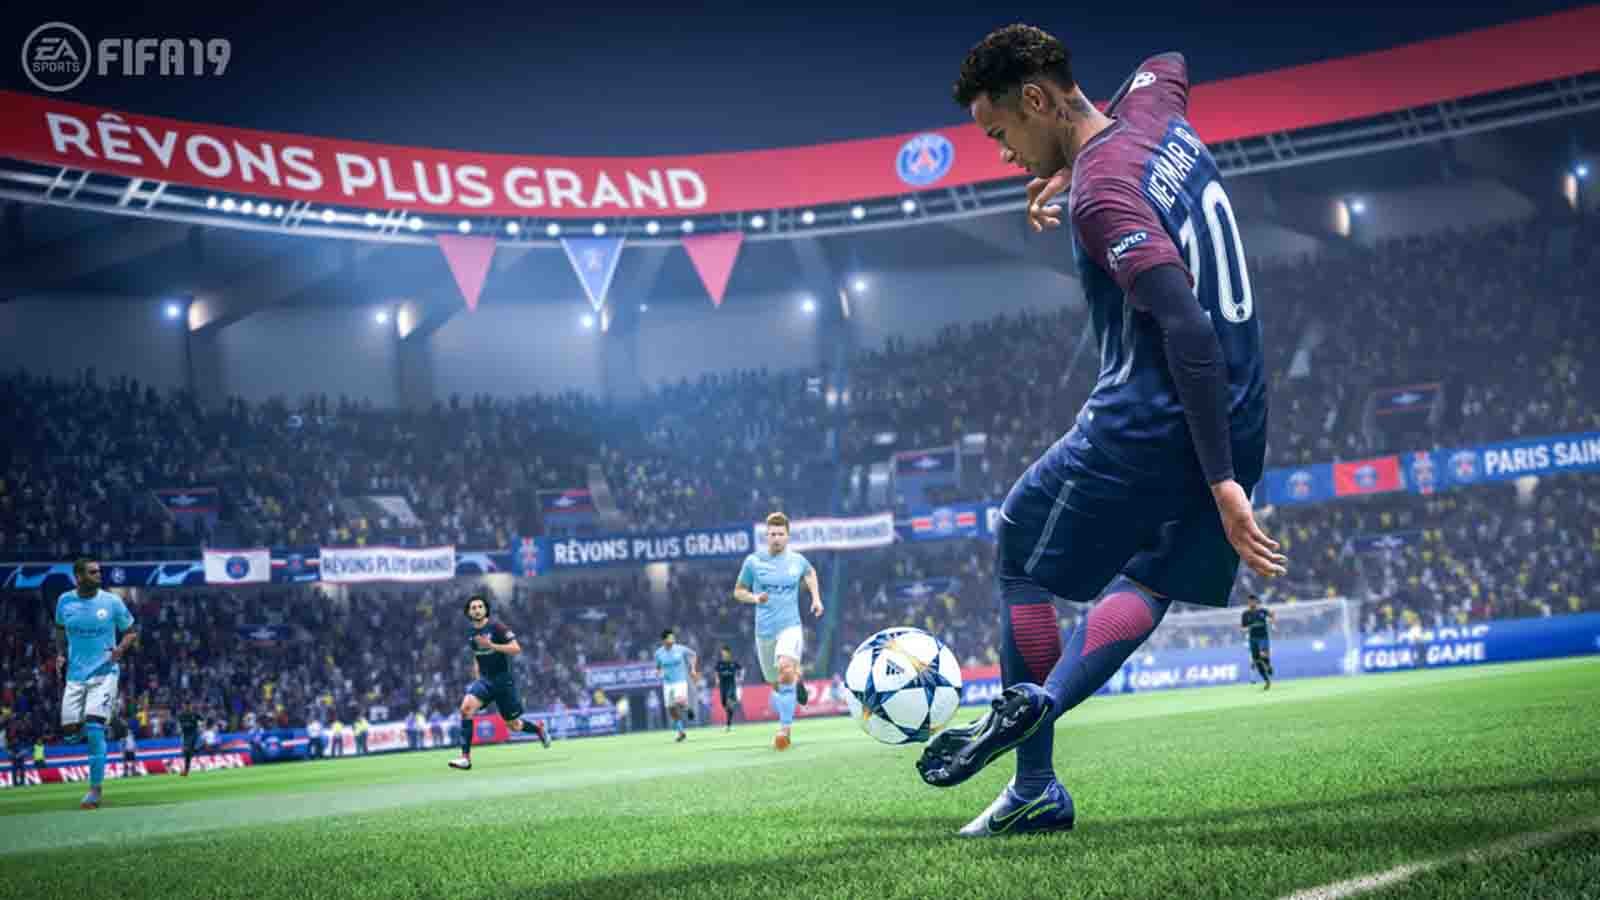 FIFA 19: Come fare crediti e partire con il piede giusto in FUT